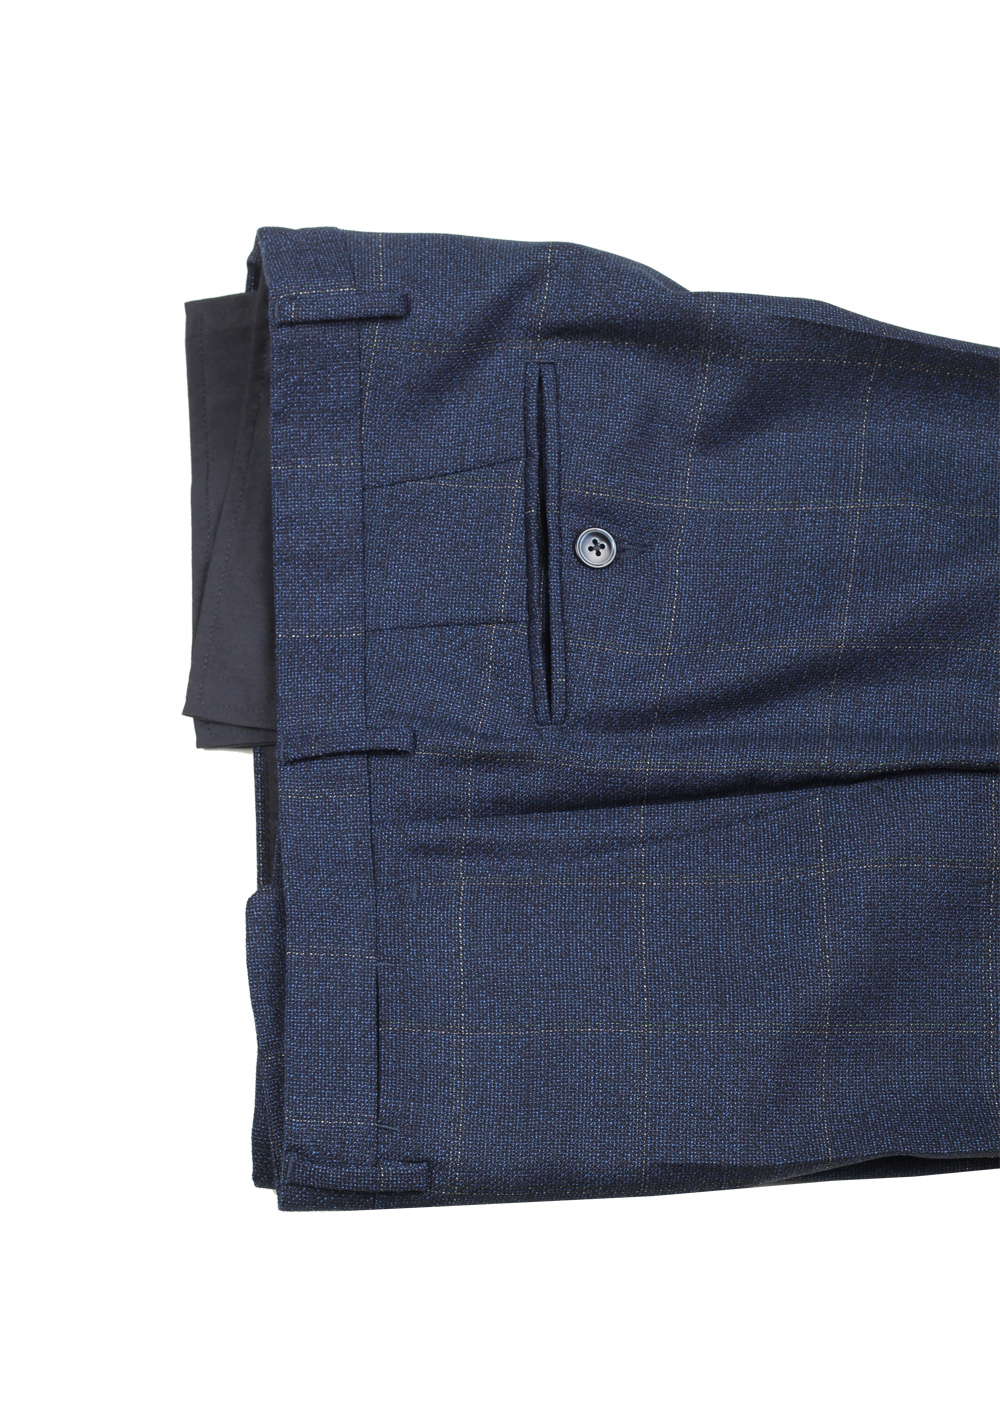 Boglioli K Jacket Blue Checked Suit Size 48 / 38R U.S. | Costume Limité